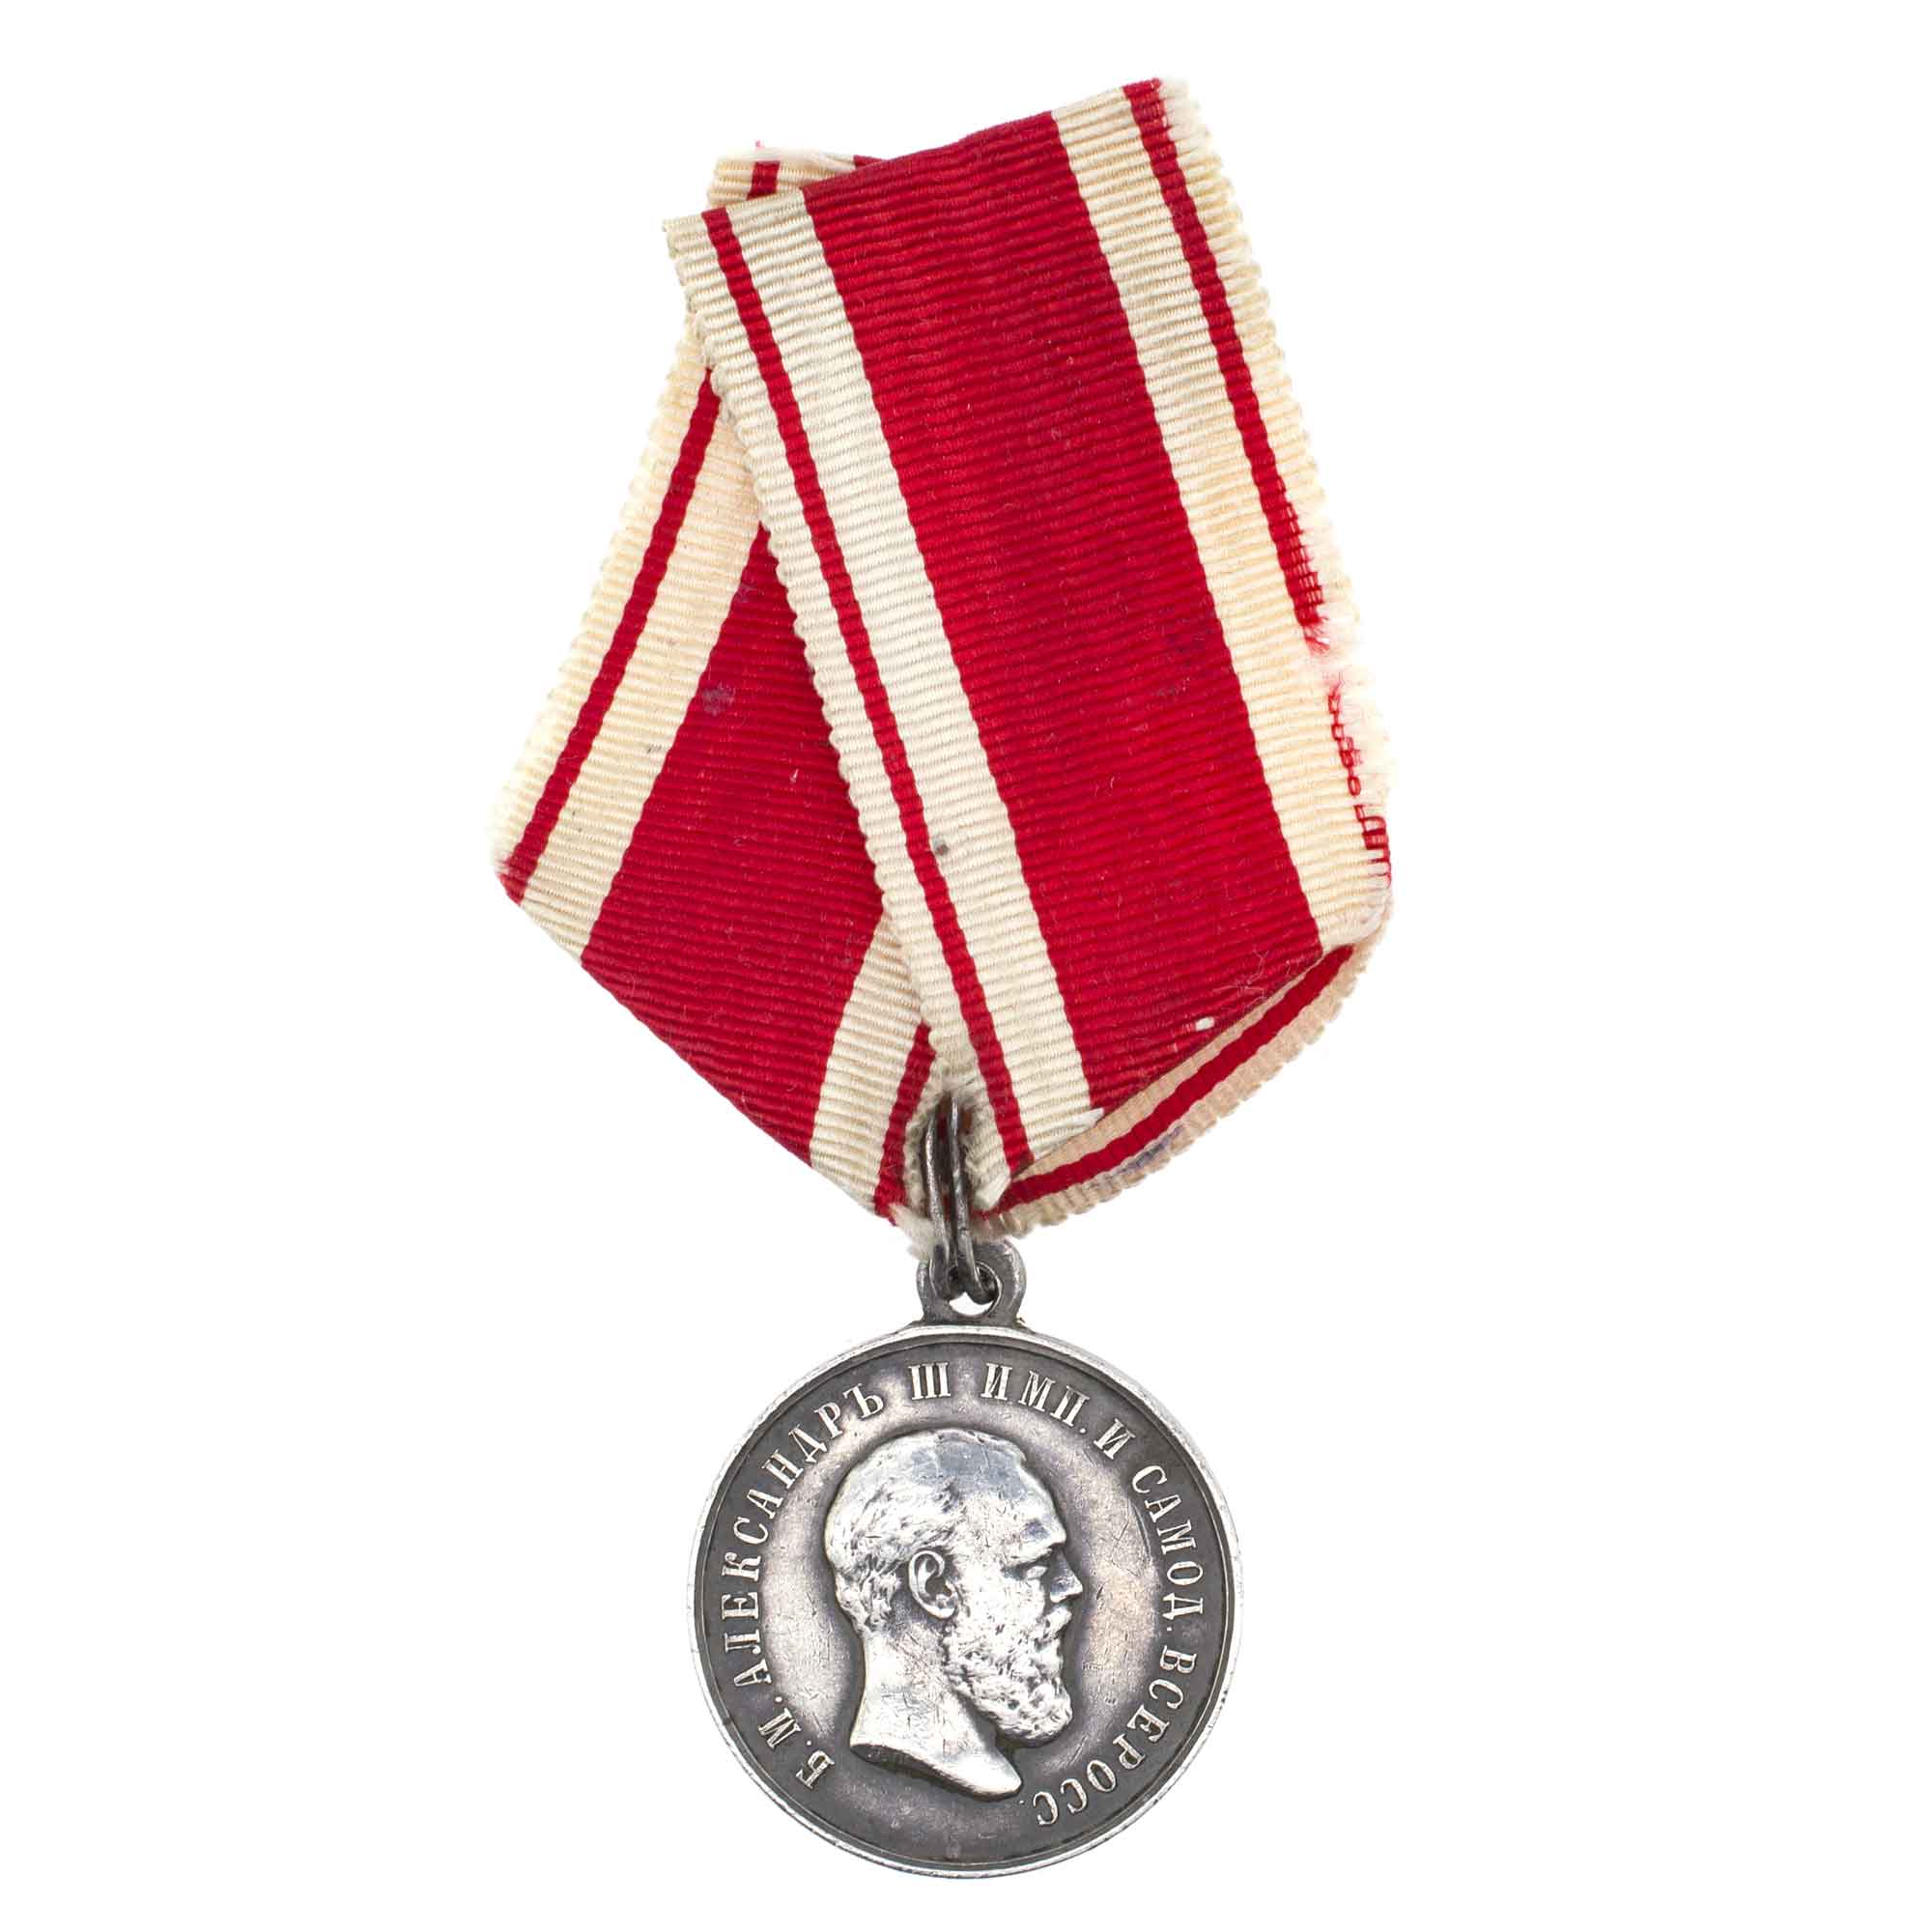 Медаль "За Усердие" с портретом Императора Александра III на ленте ордена Св. Станислава. Нагрудная, 1884 - 1888 гг. Серебро.